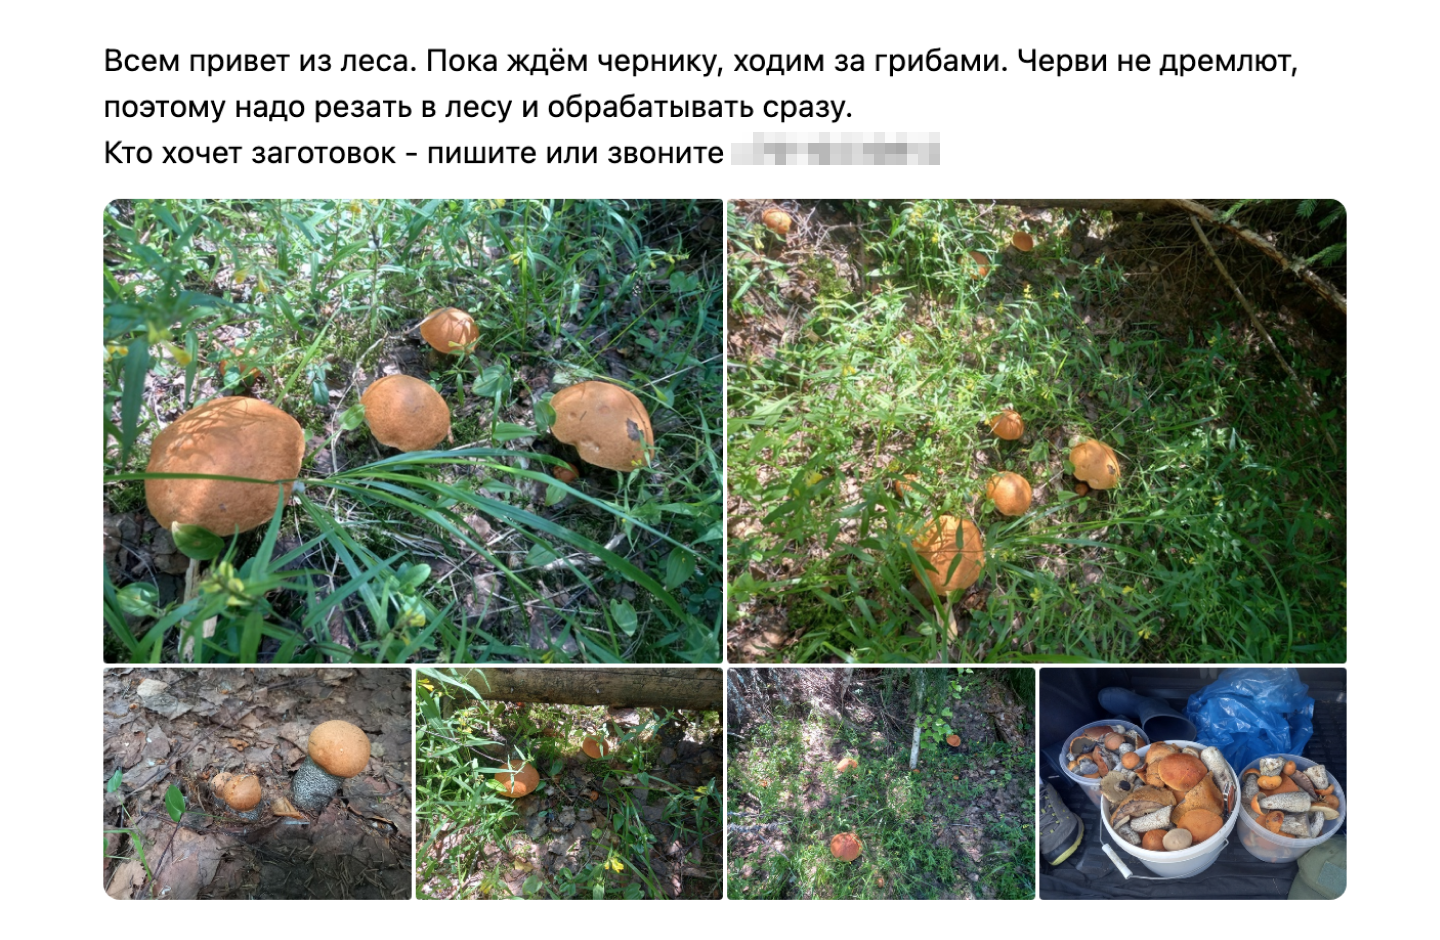 Магазинчик во «Вконтакте» выкладывает фото из леса: вот грибы растут, а вот их собрали и поставили в машину. Фото реалистичные — скорее всего, это правда. Источник: сообщество в vk.com